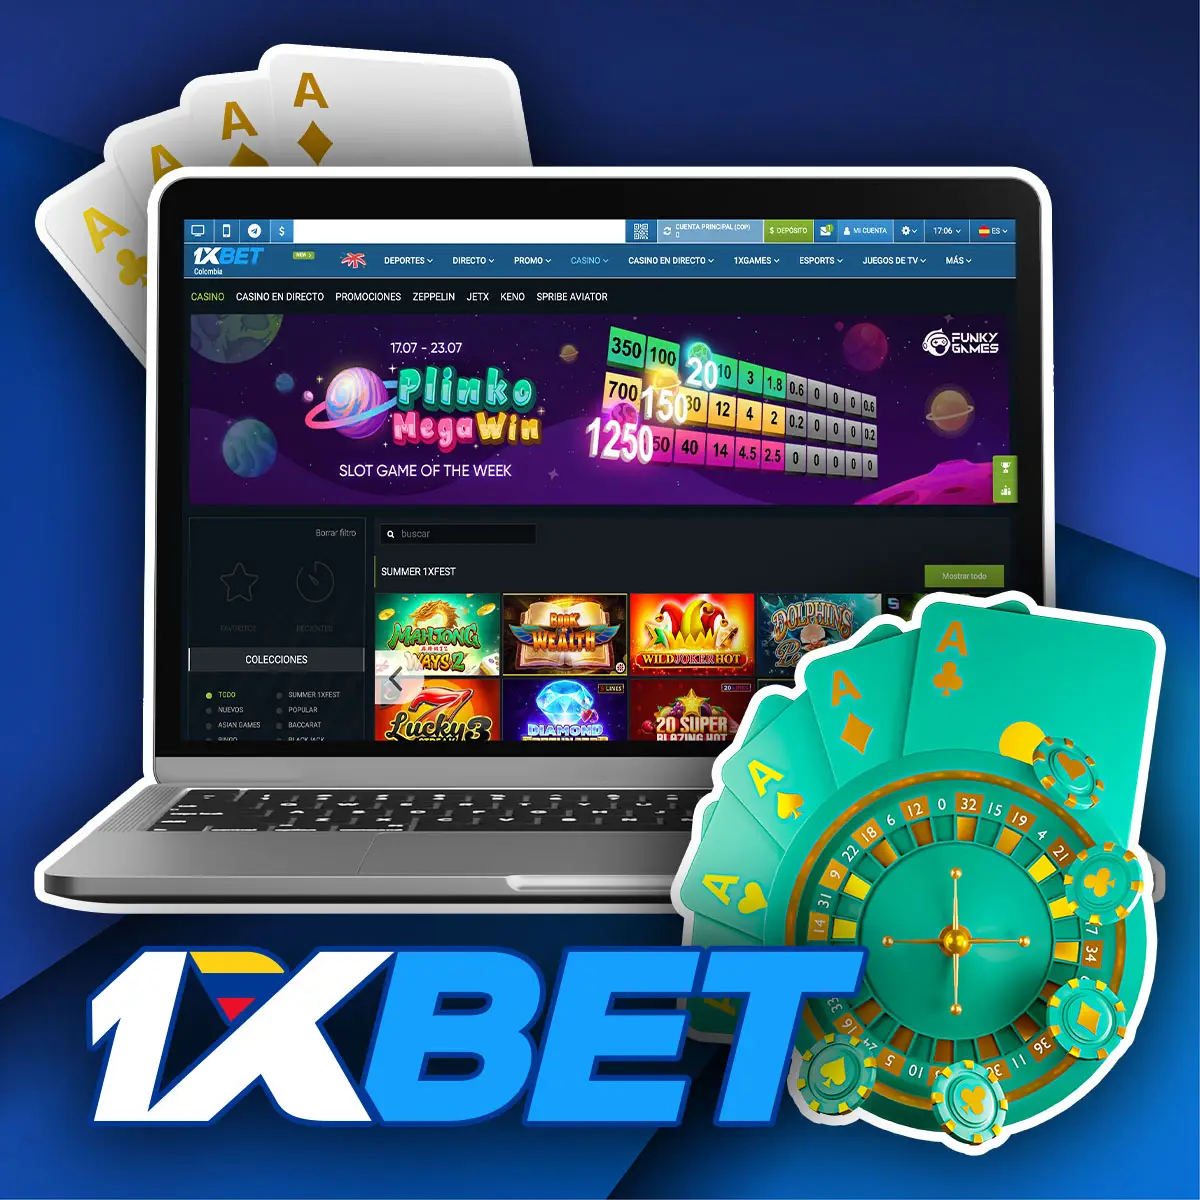 Casino con los mejores juegos y bonos en 1xbet casa de apuestas